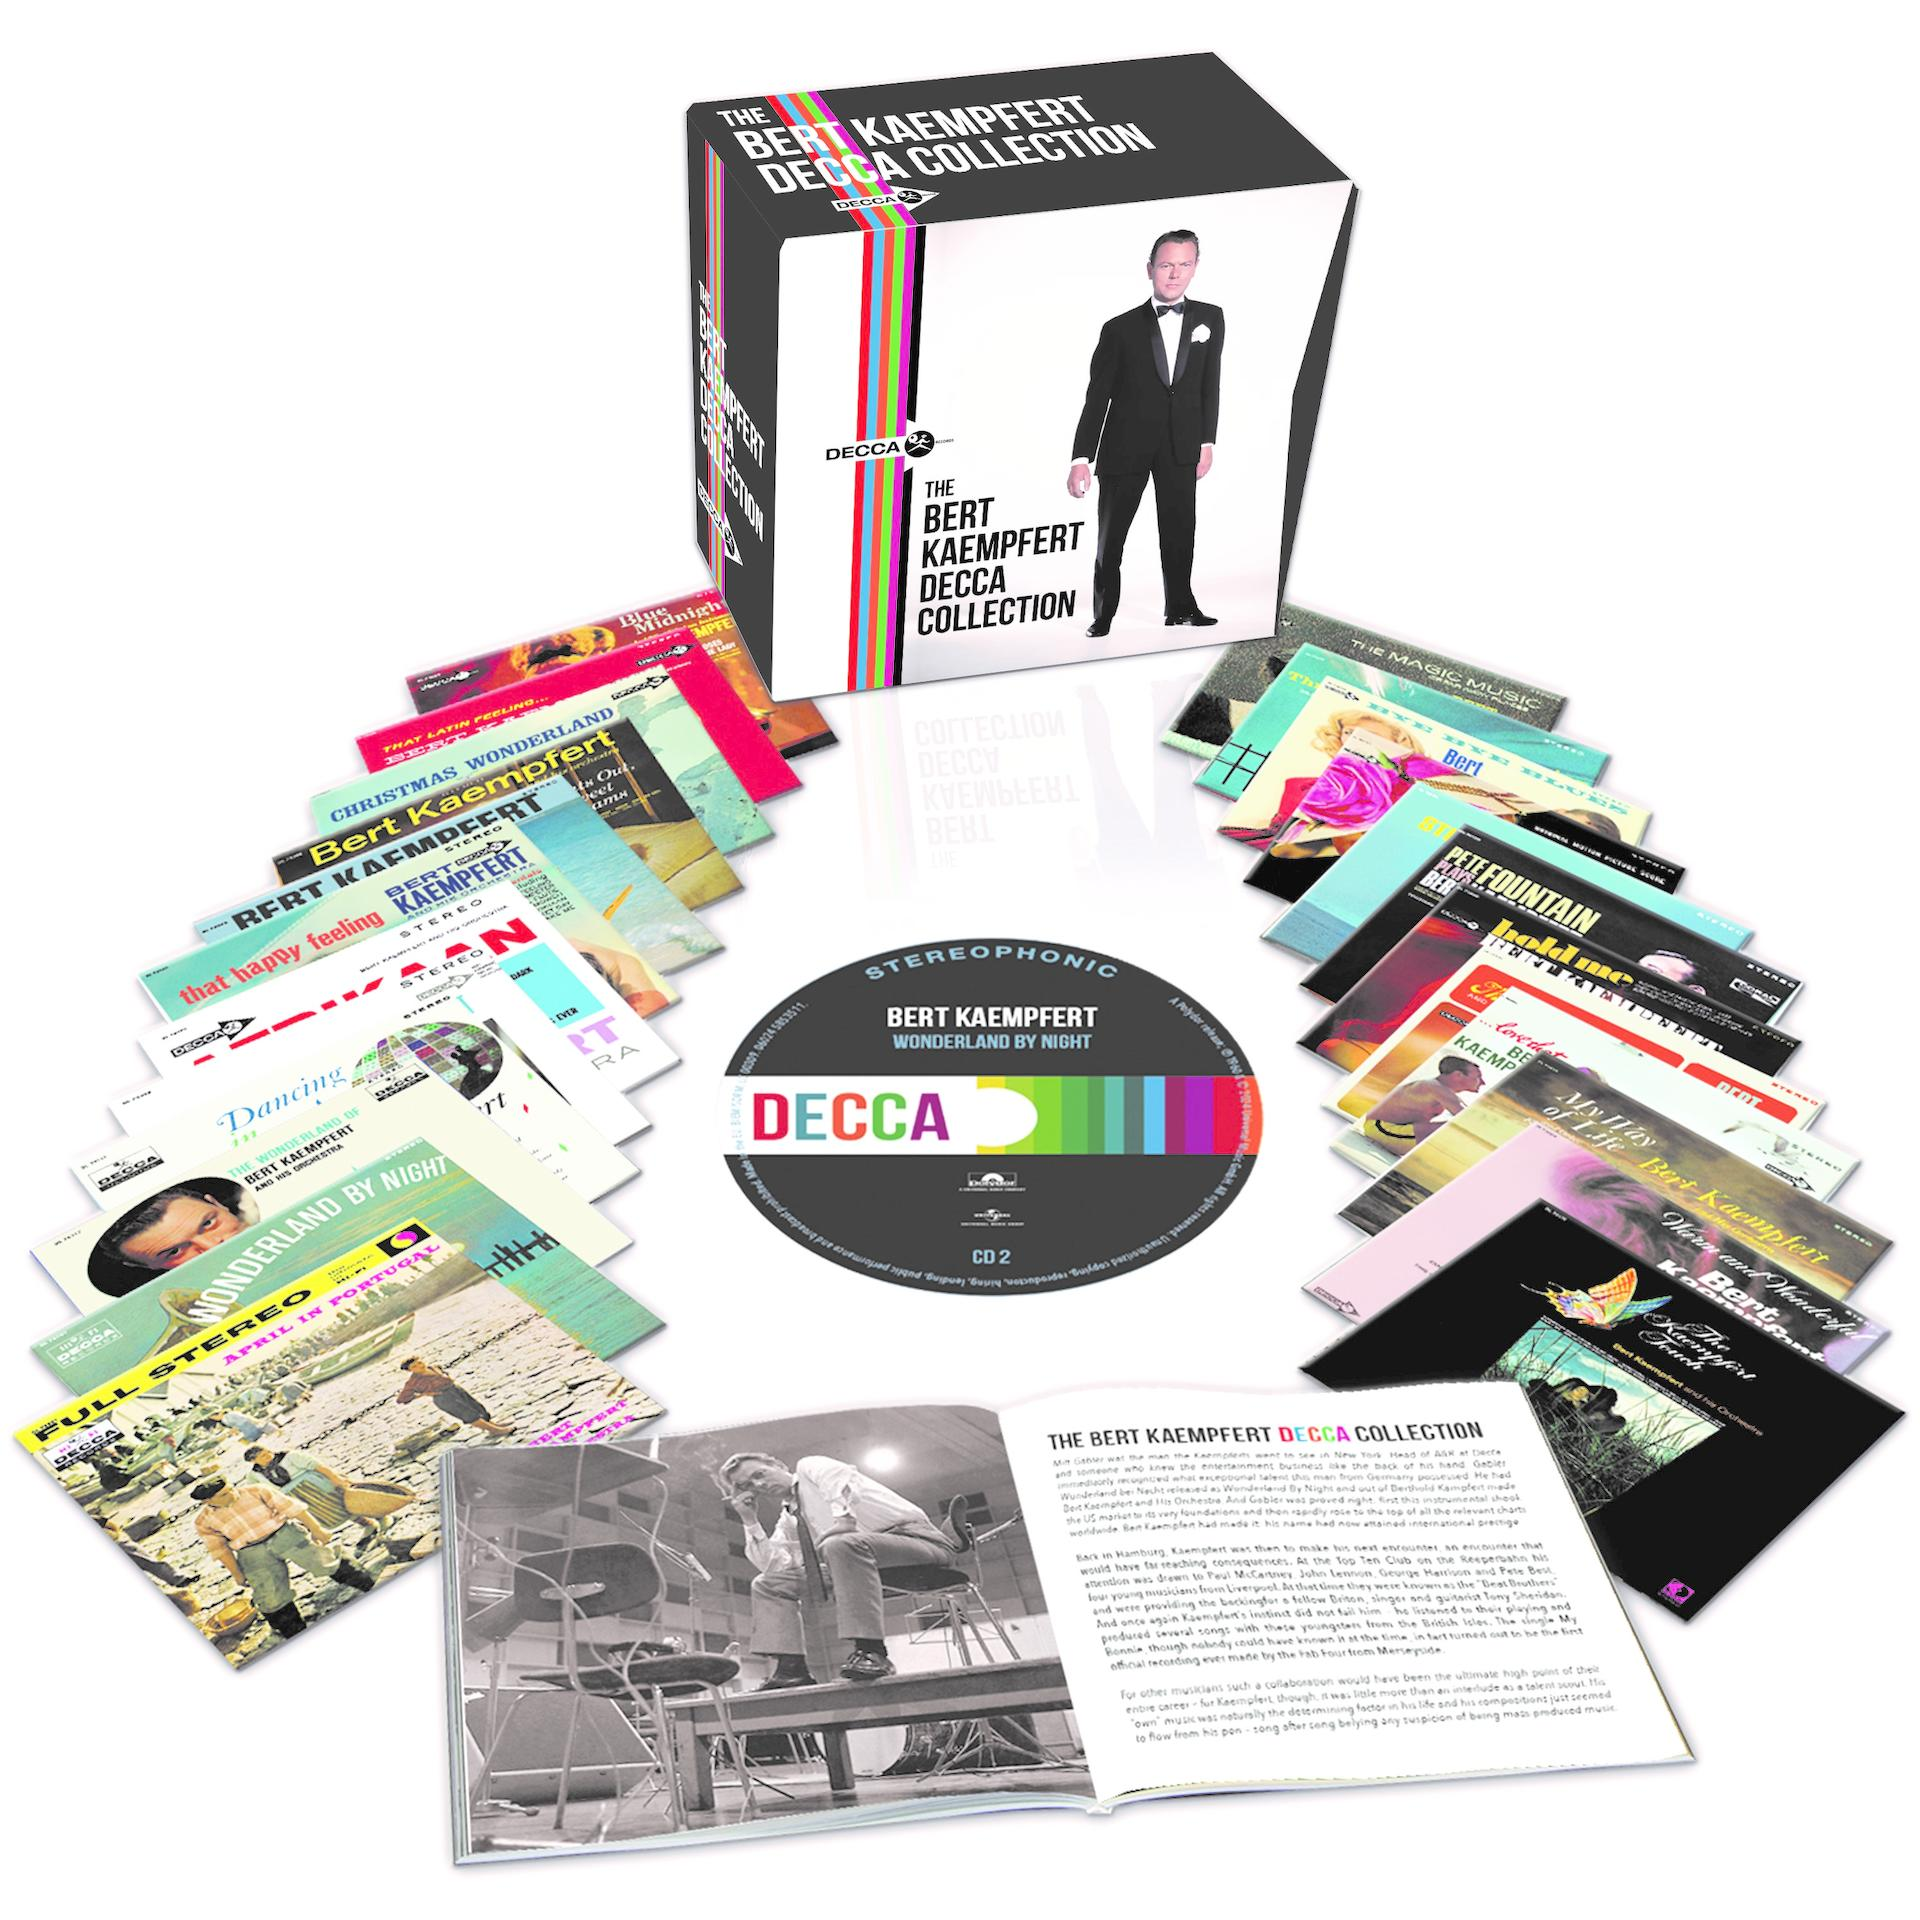 Bert Kaempfert - The Box) (24 Collection Decca Bert Kaempfert (CD) - CD